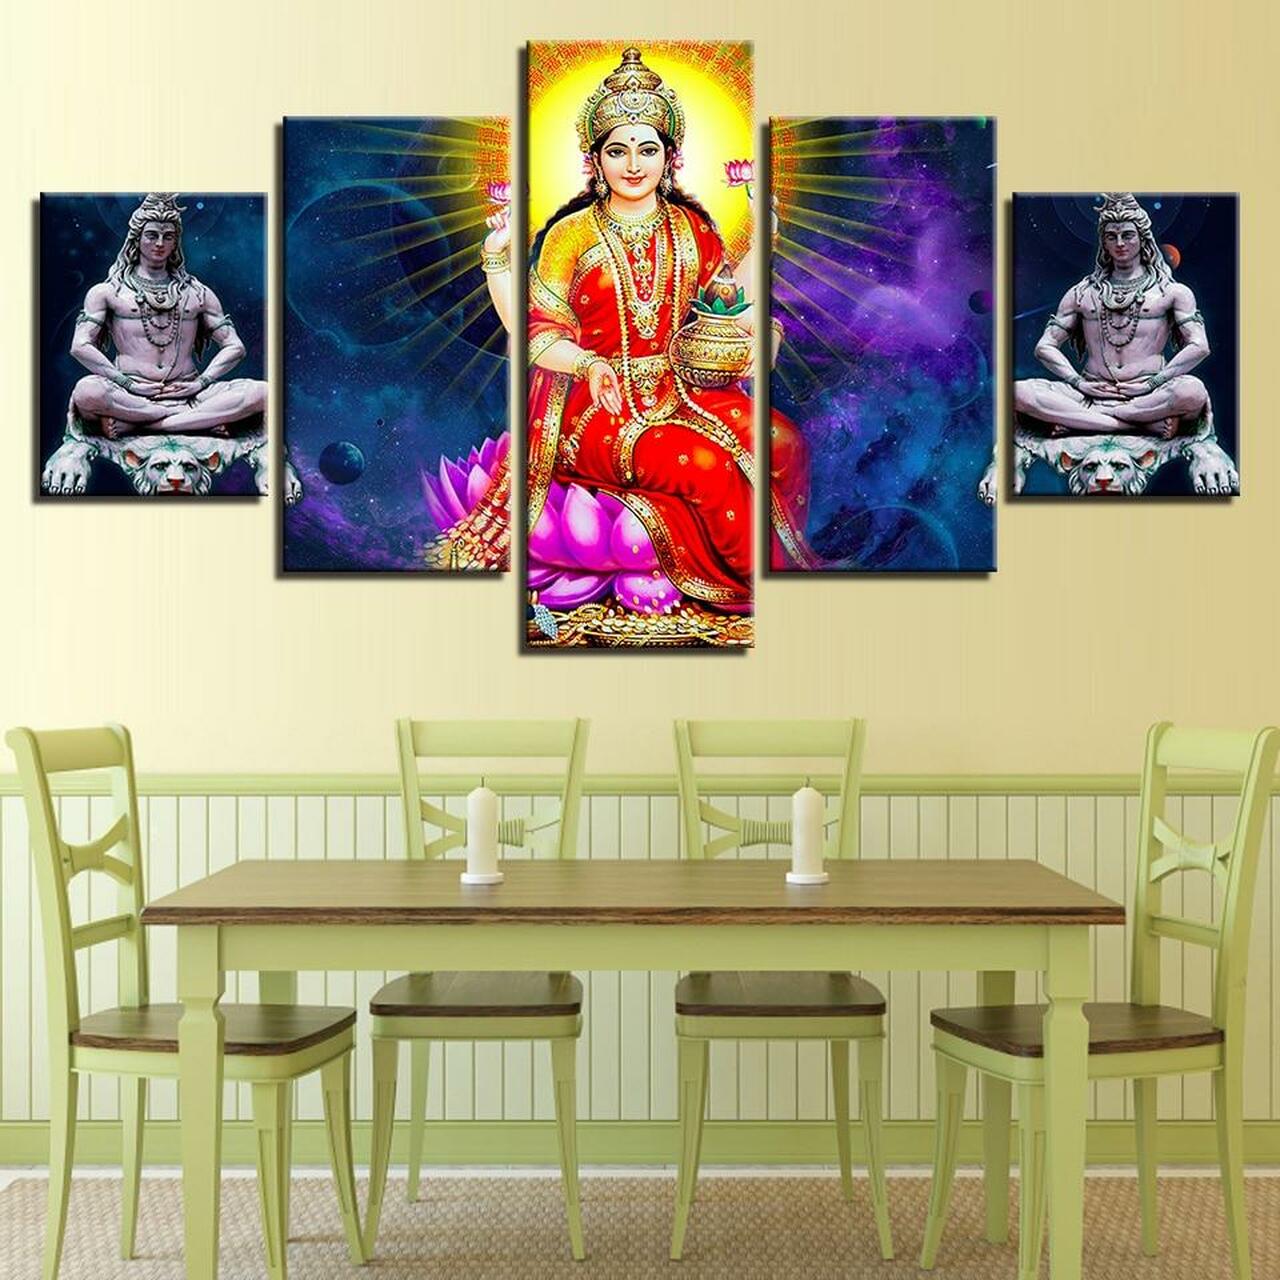 Laxmi and Shiva 5 Piece Canvas Art Wall Decor